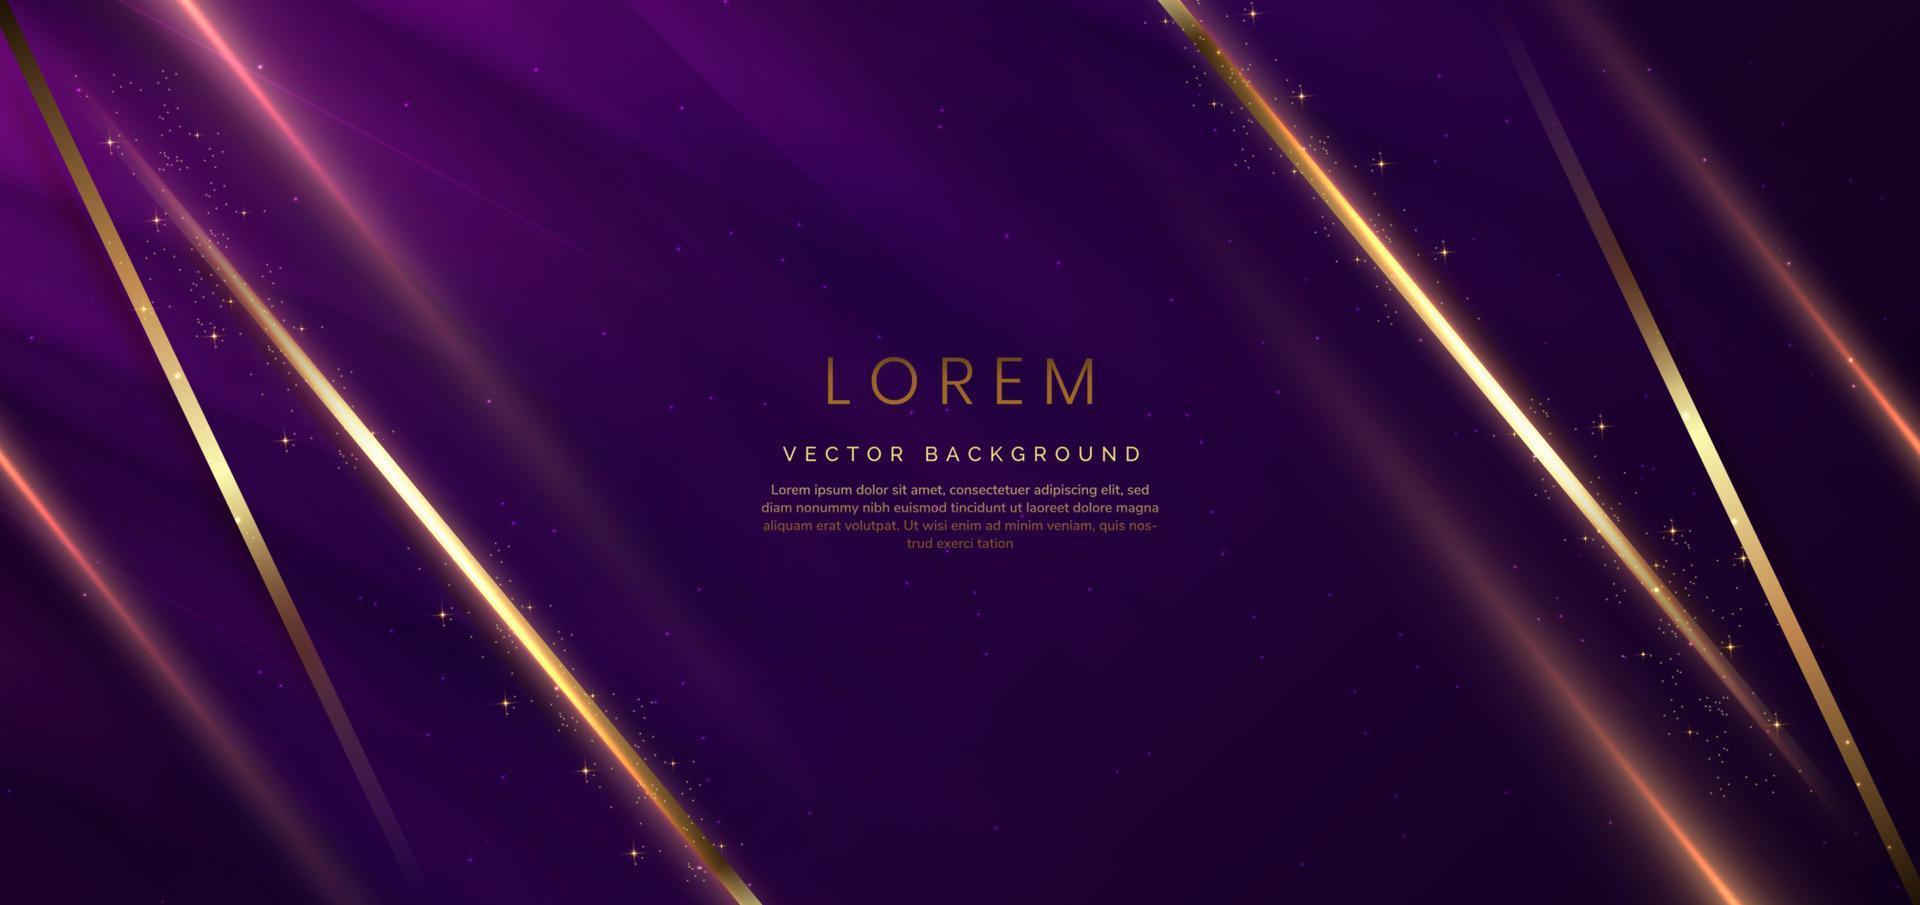 fondo abstracto lujo púrpura oscuro elegante diagonal geométrica con efecto de iluminación dorada y brillante con espacio de copia para texto. vector